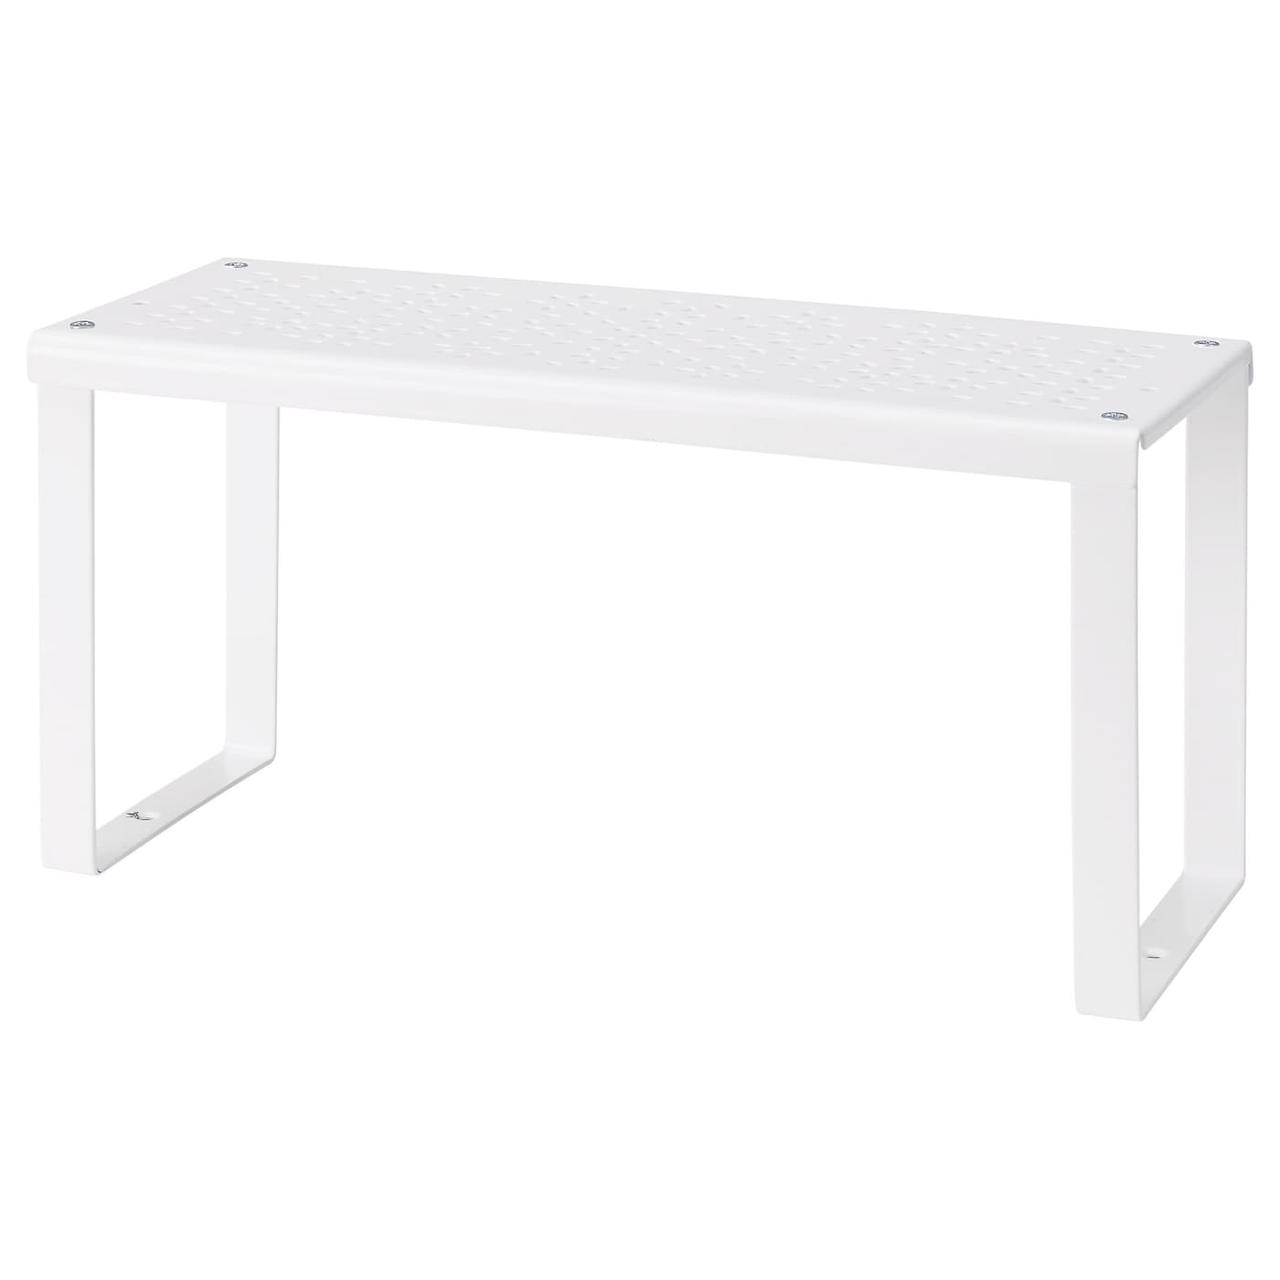 IKEA/ ВАРЬЕРА Вставка в полку, белый32x13x16 см, фото 1